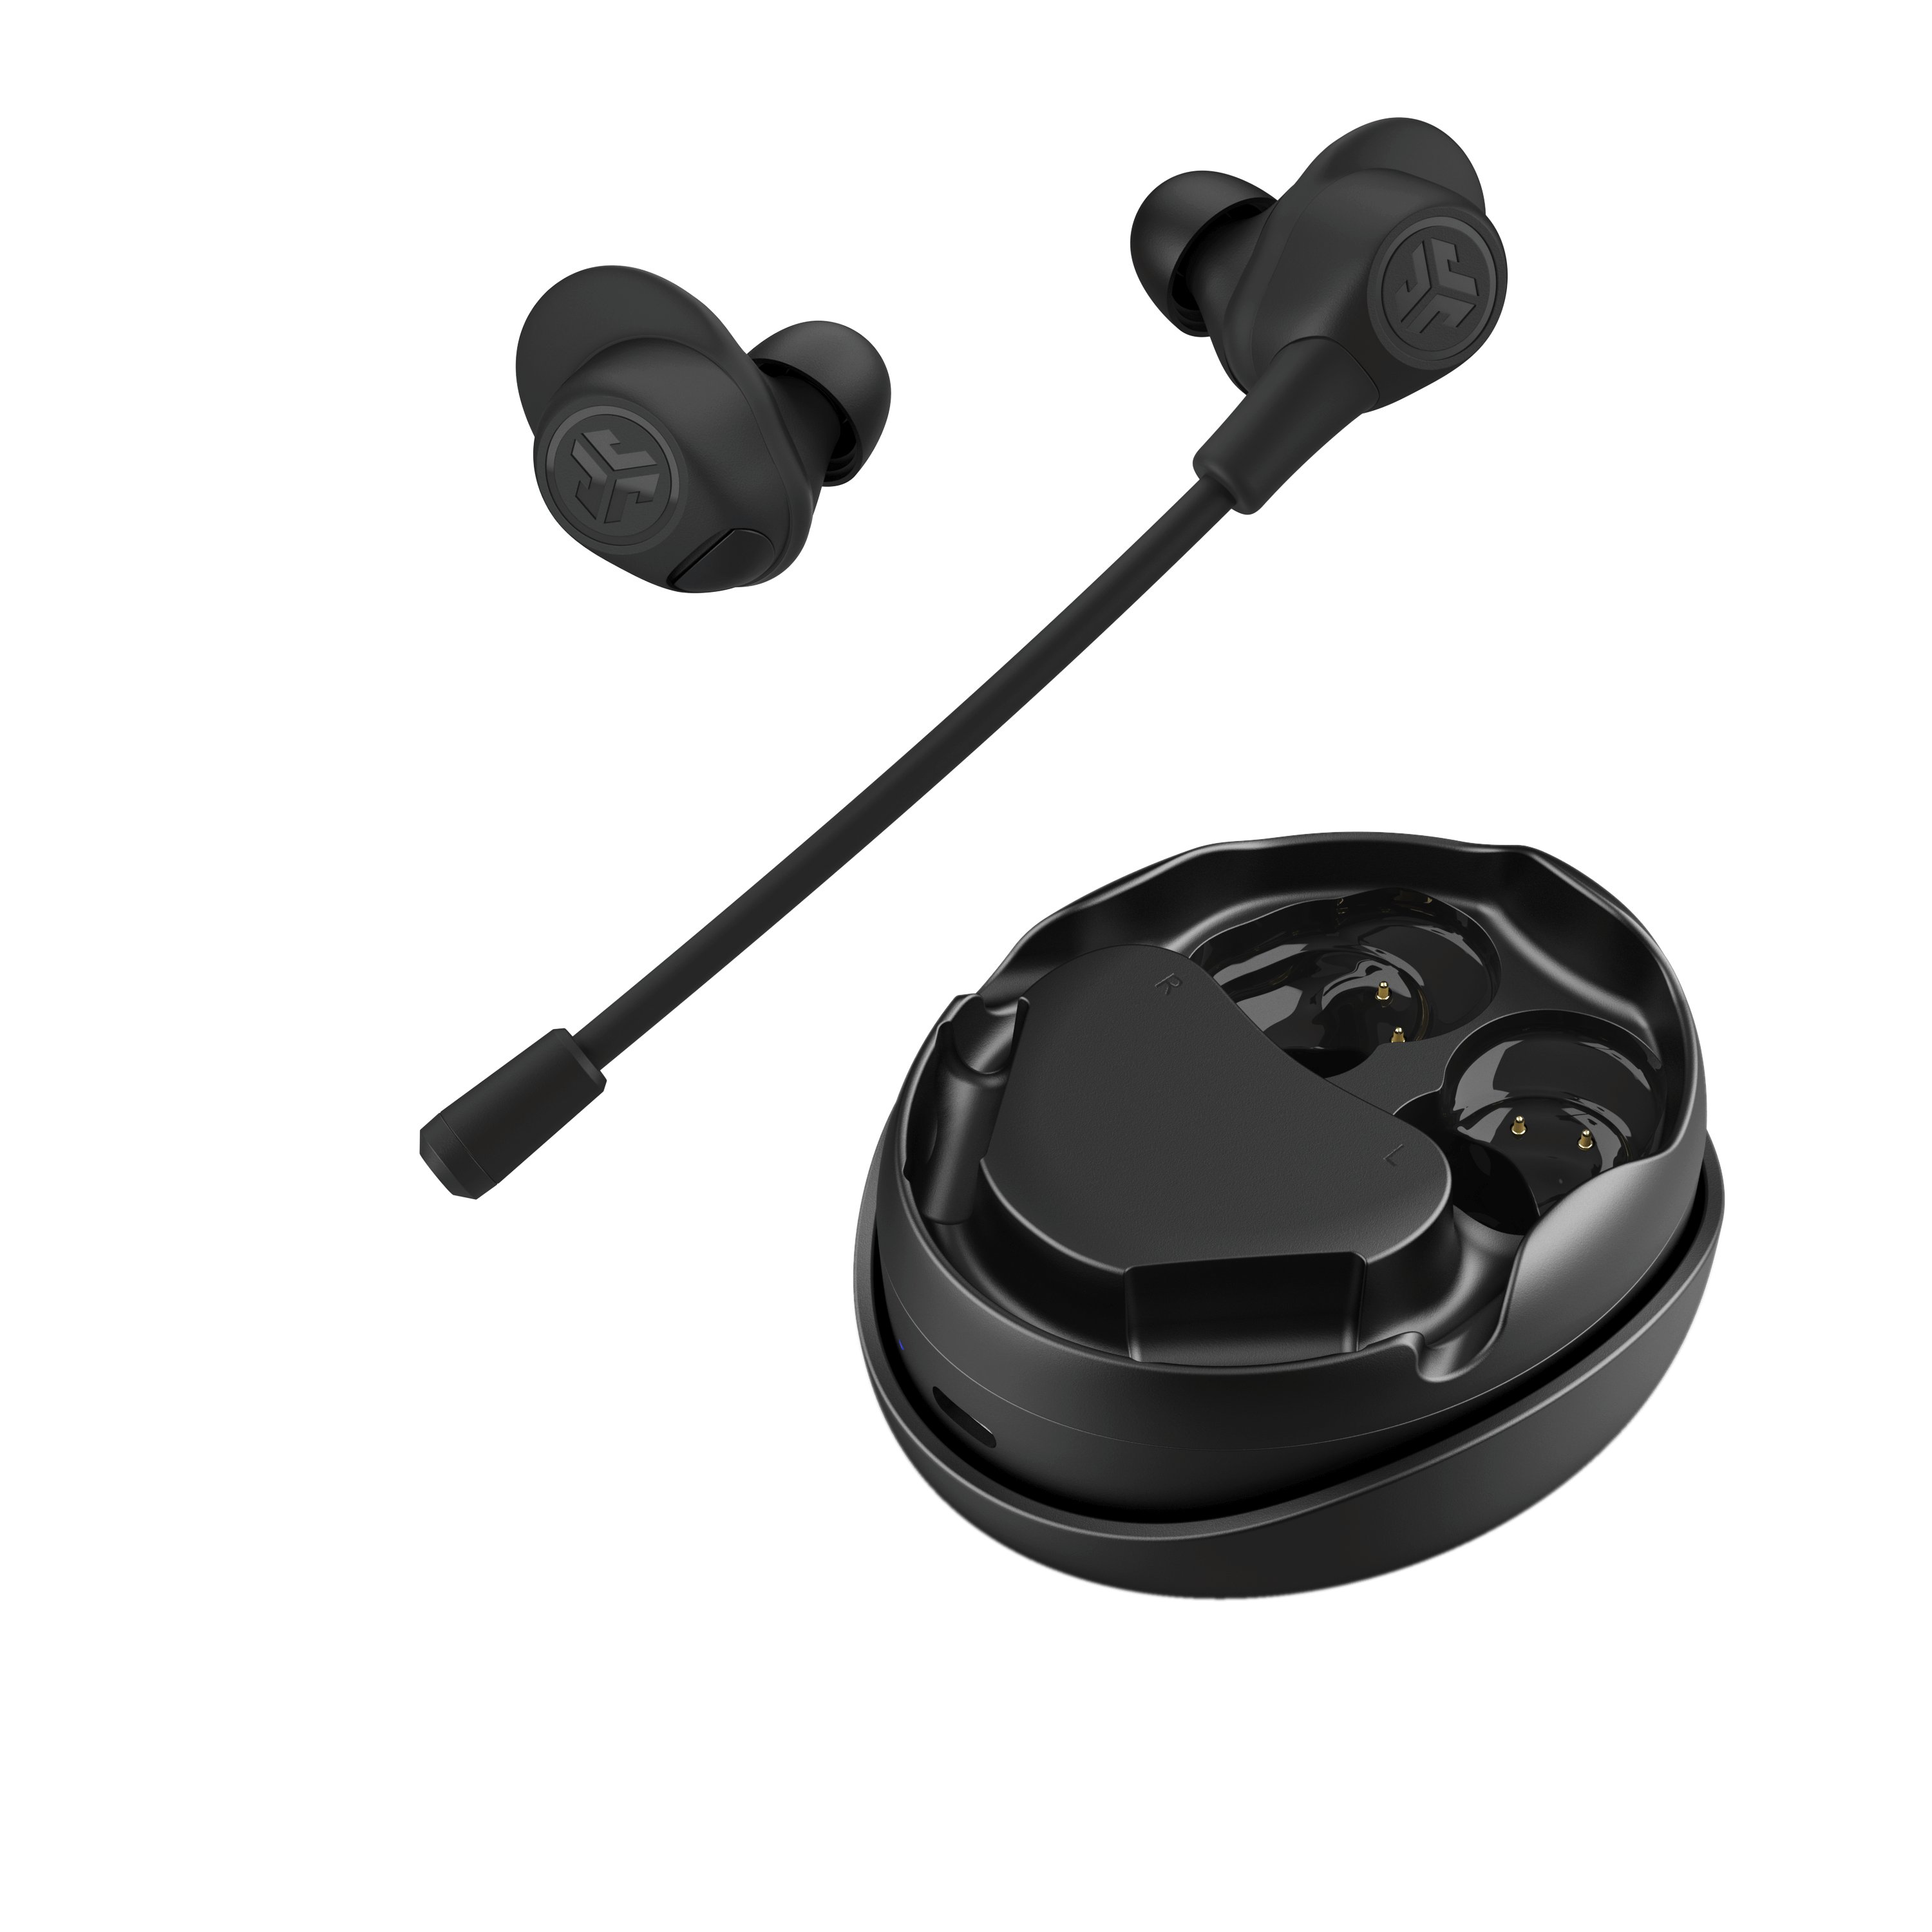 Sony WF-1000XM4 Wireless In-Ear Headset - Black for sale online